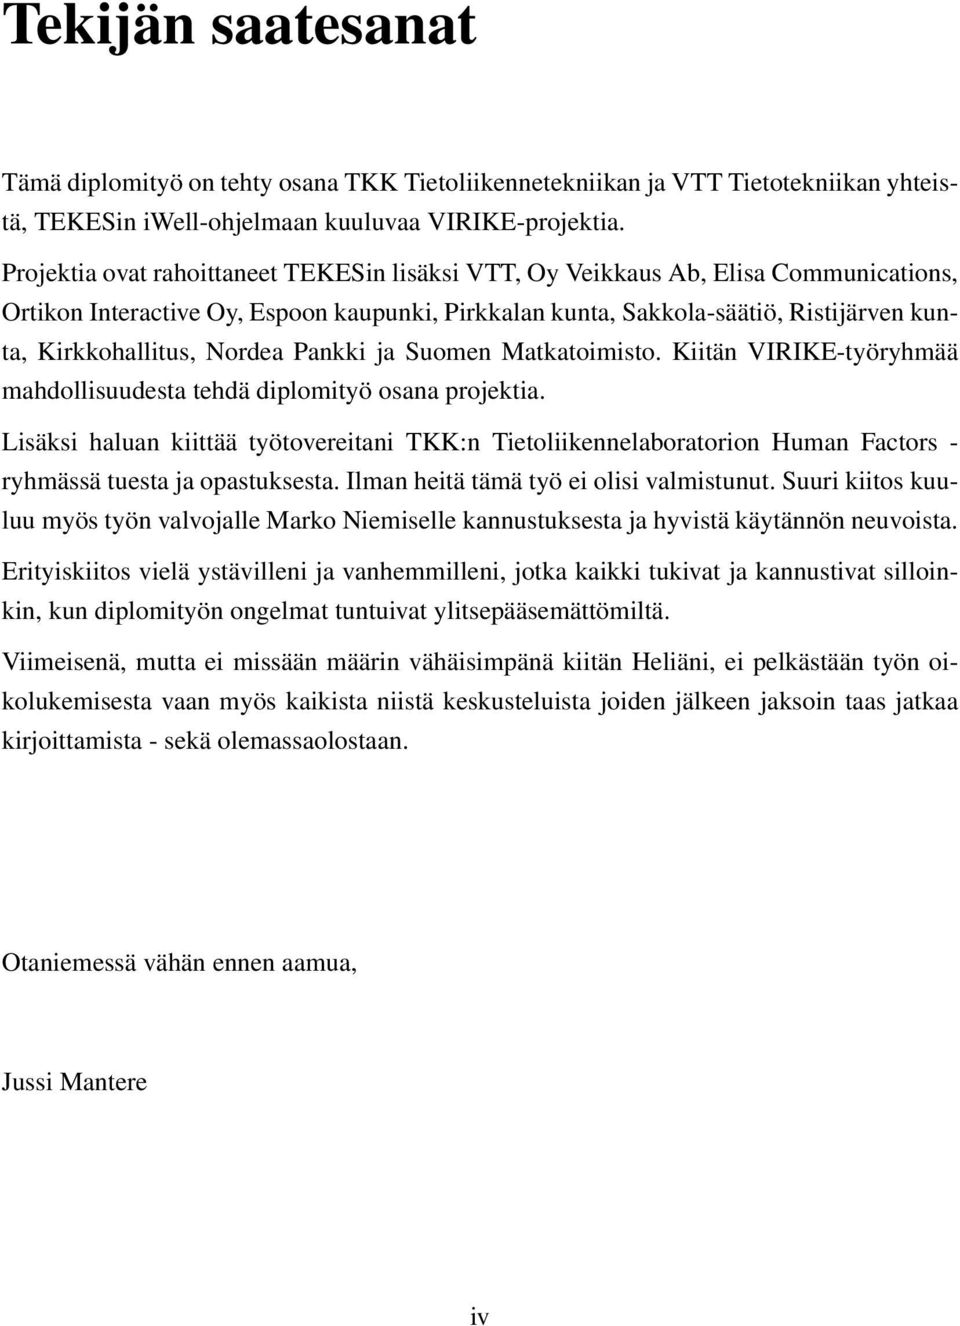 Nordea Pankki ja Suomen Matkatoimisto. Kiitän VIRIKE-työryhmää mahdollisuudesta tehdä diplomityö osana projektia.